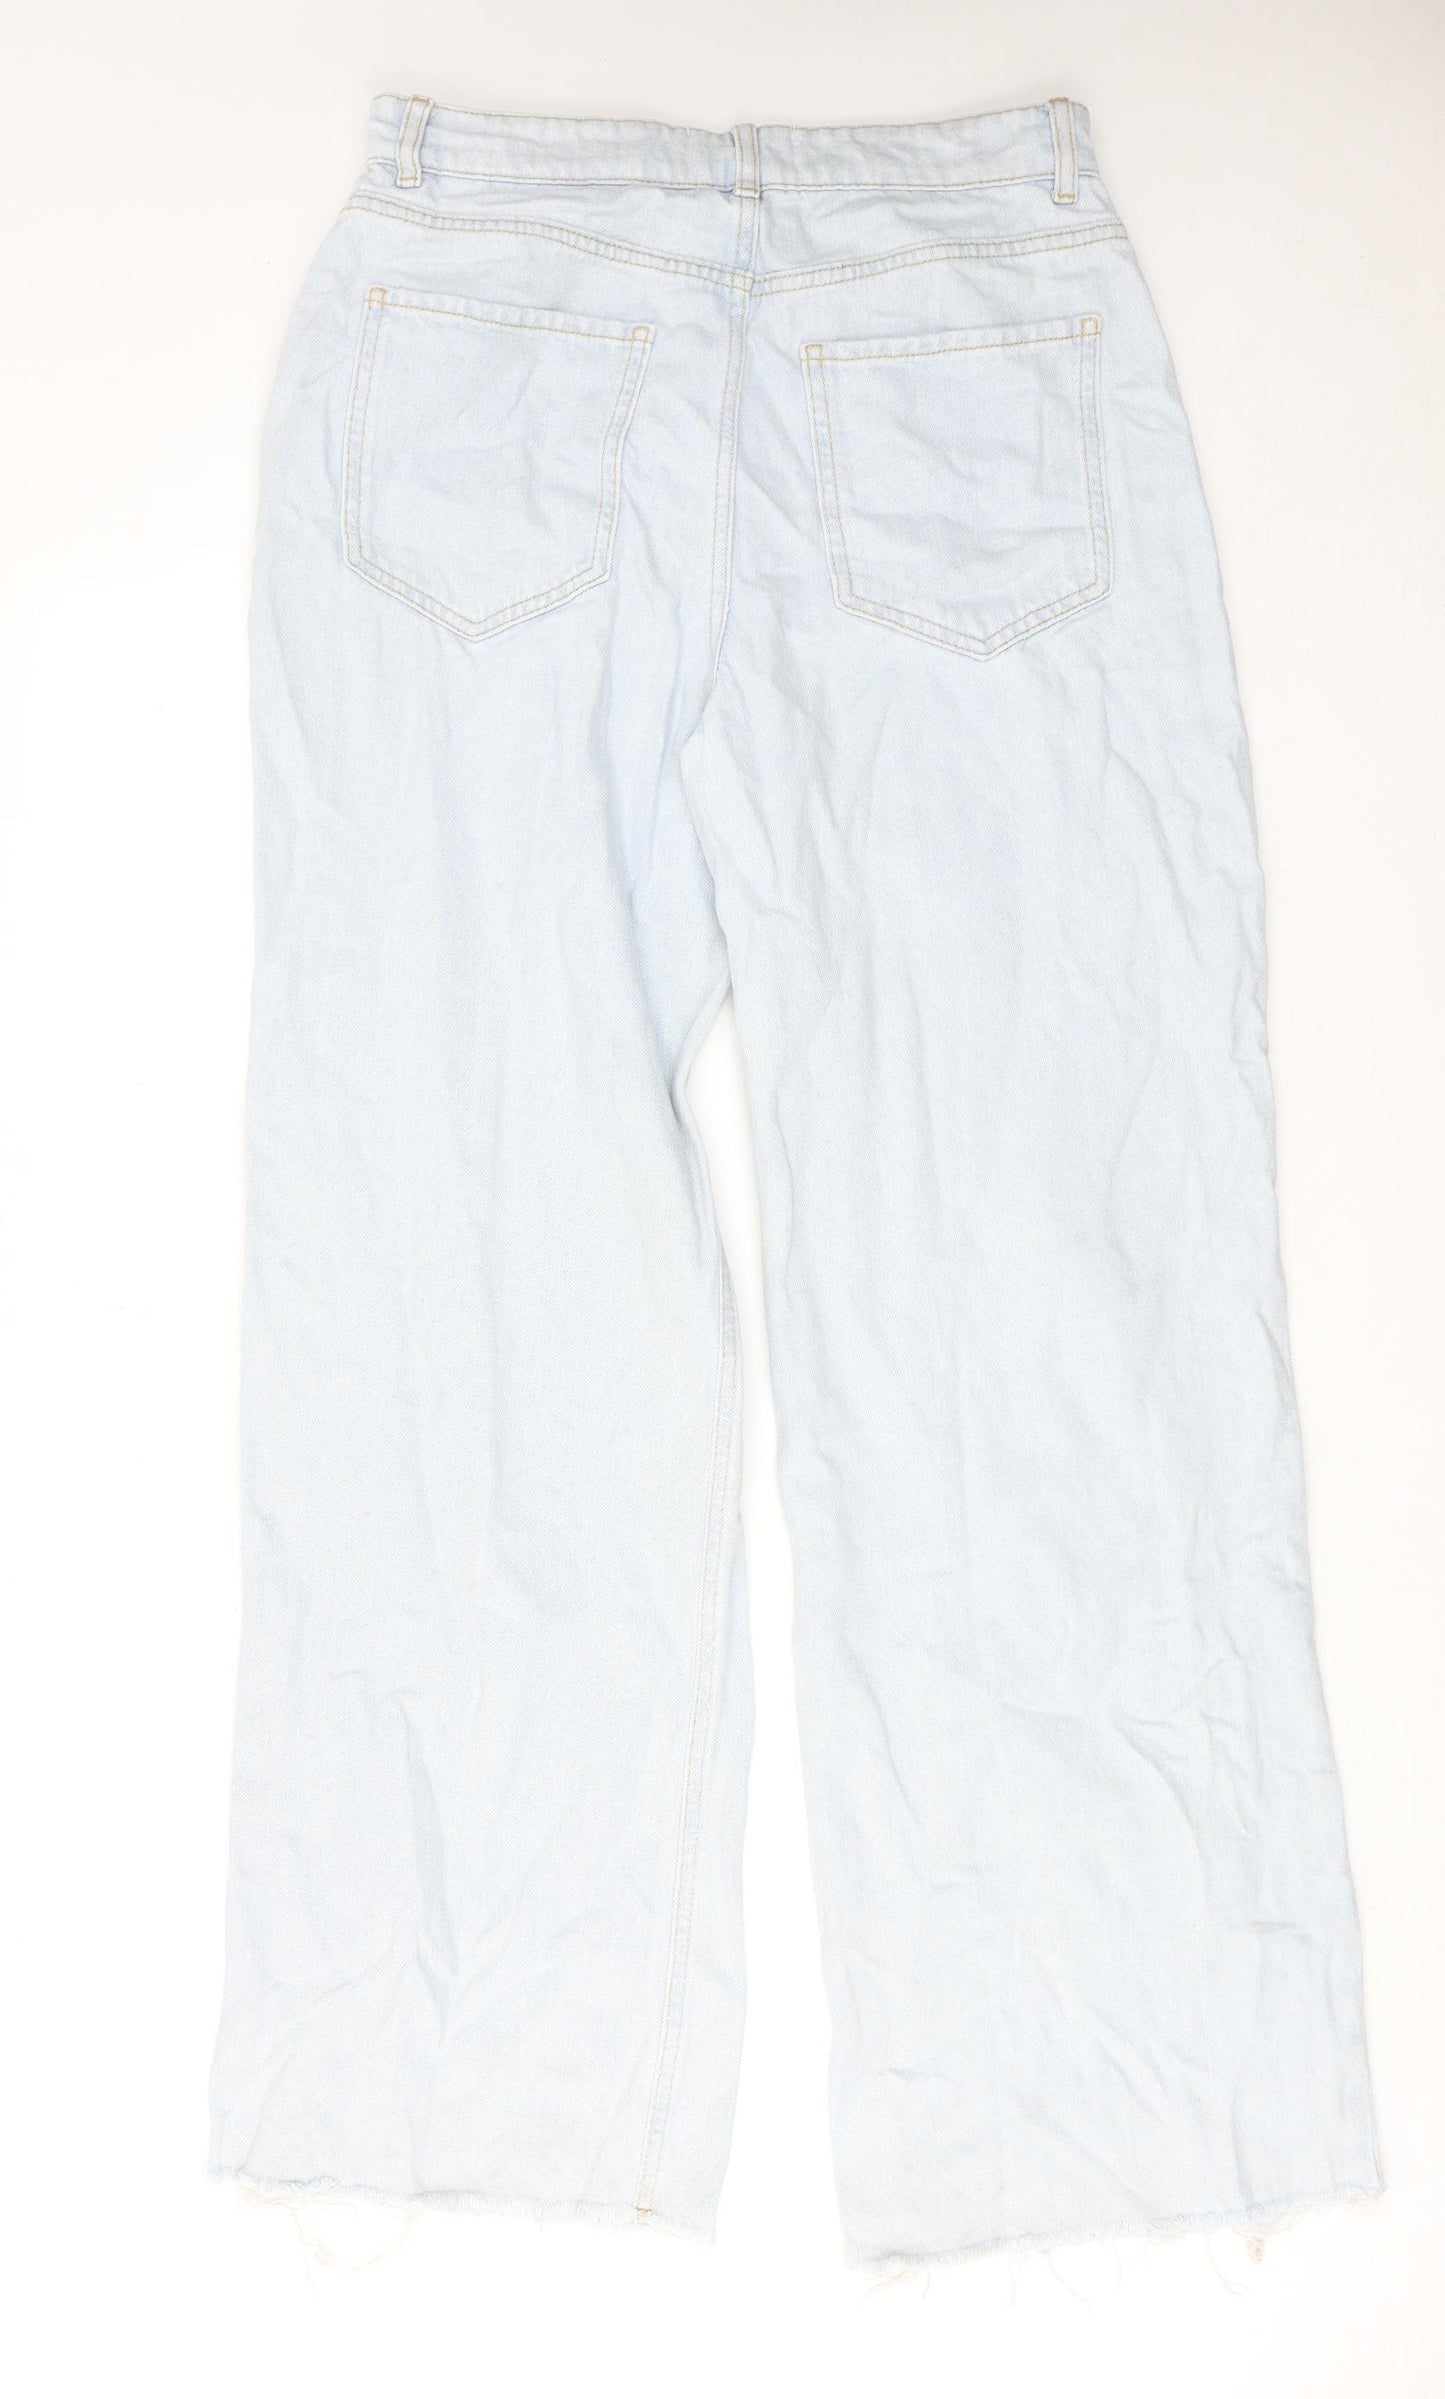 New Look Womens Blue Cotton Wide-Leg Jeans Size 12 Regular Zip